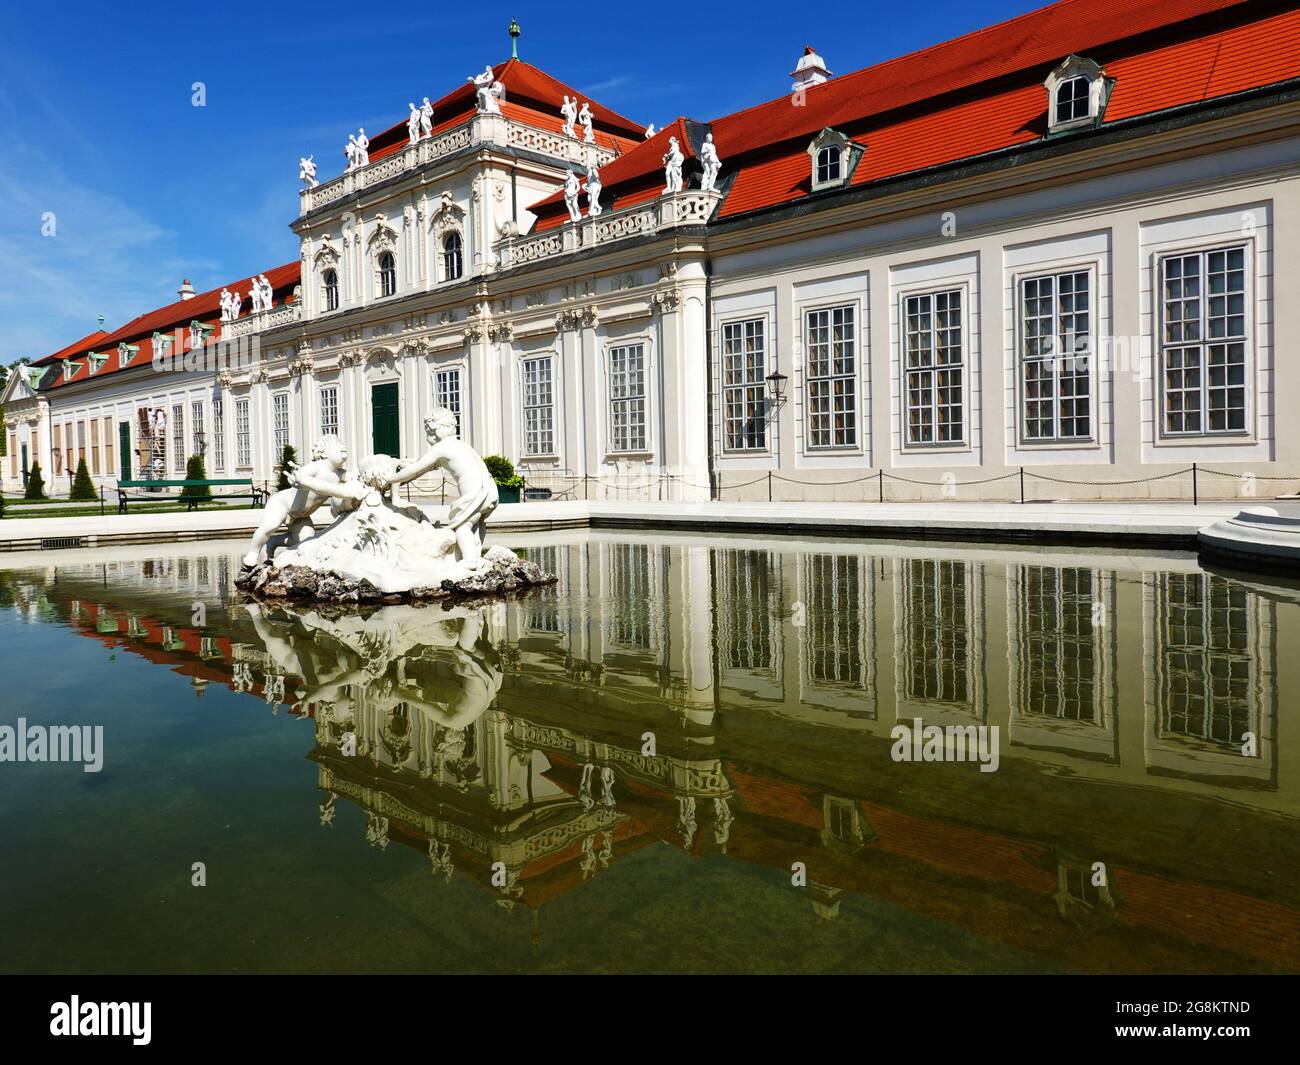 Wien, Schloss Belvedere, schlendern durch romantische Parkanlagen im Herzen der Landeshauptstadt Wien. Stock Photo